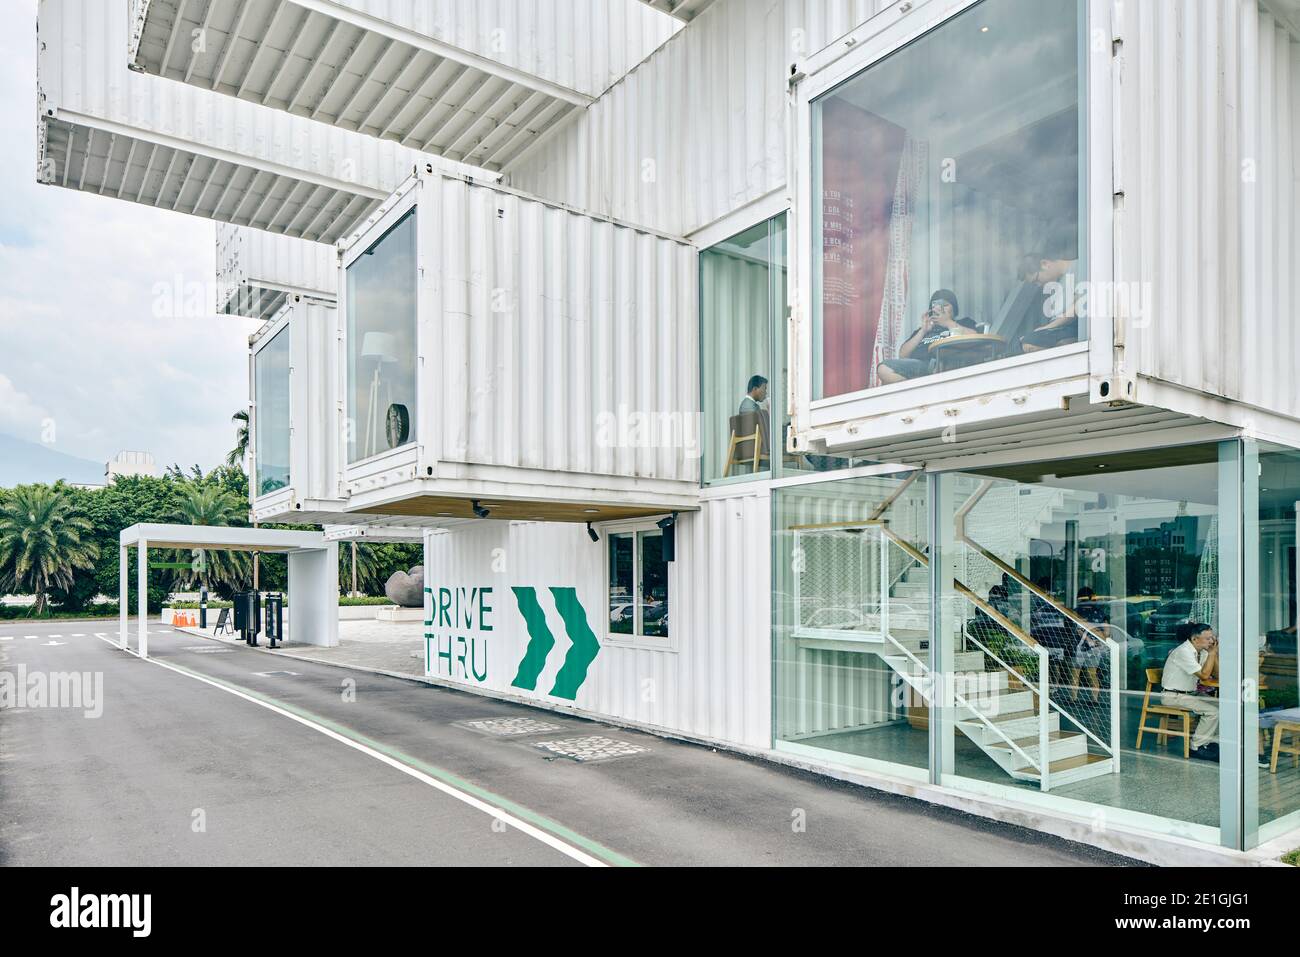 Außenansicht des ersten Starbucks Cafés im asiatisch-pazifischen Raum, aus recycelten Transportcontainern gebaut, Hualien Bay Mall, Hualie, Taiwan. Stockfoto